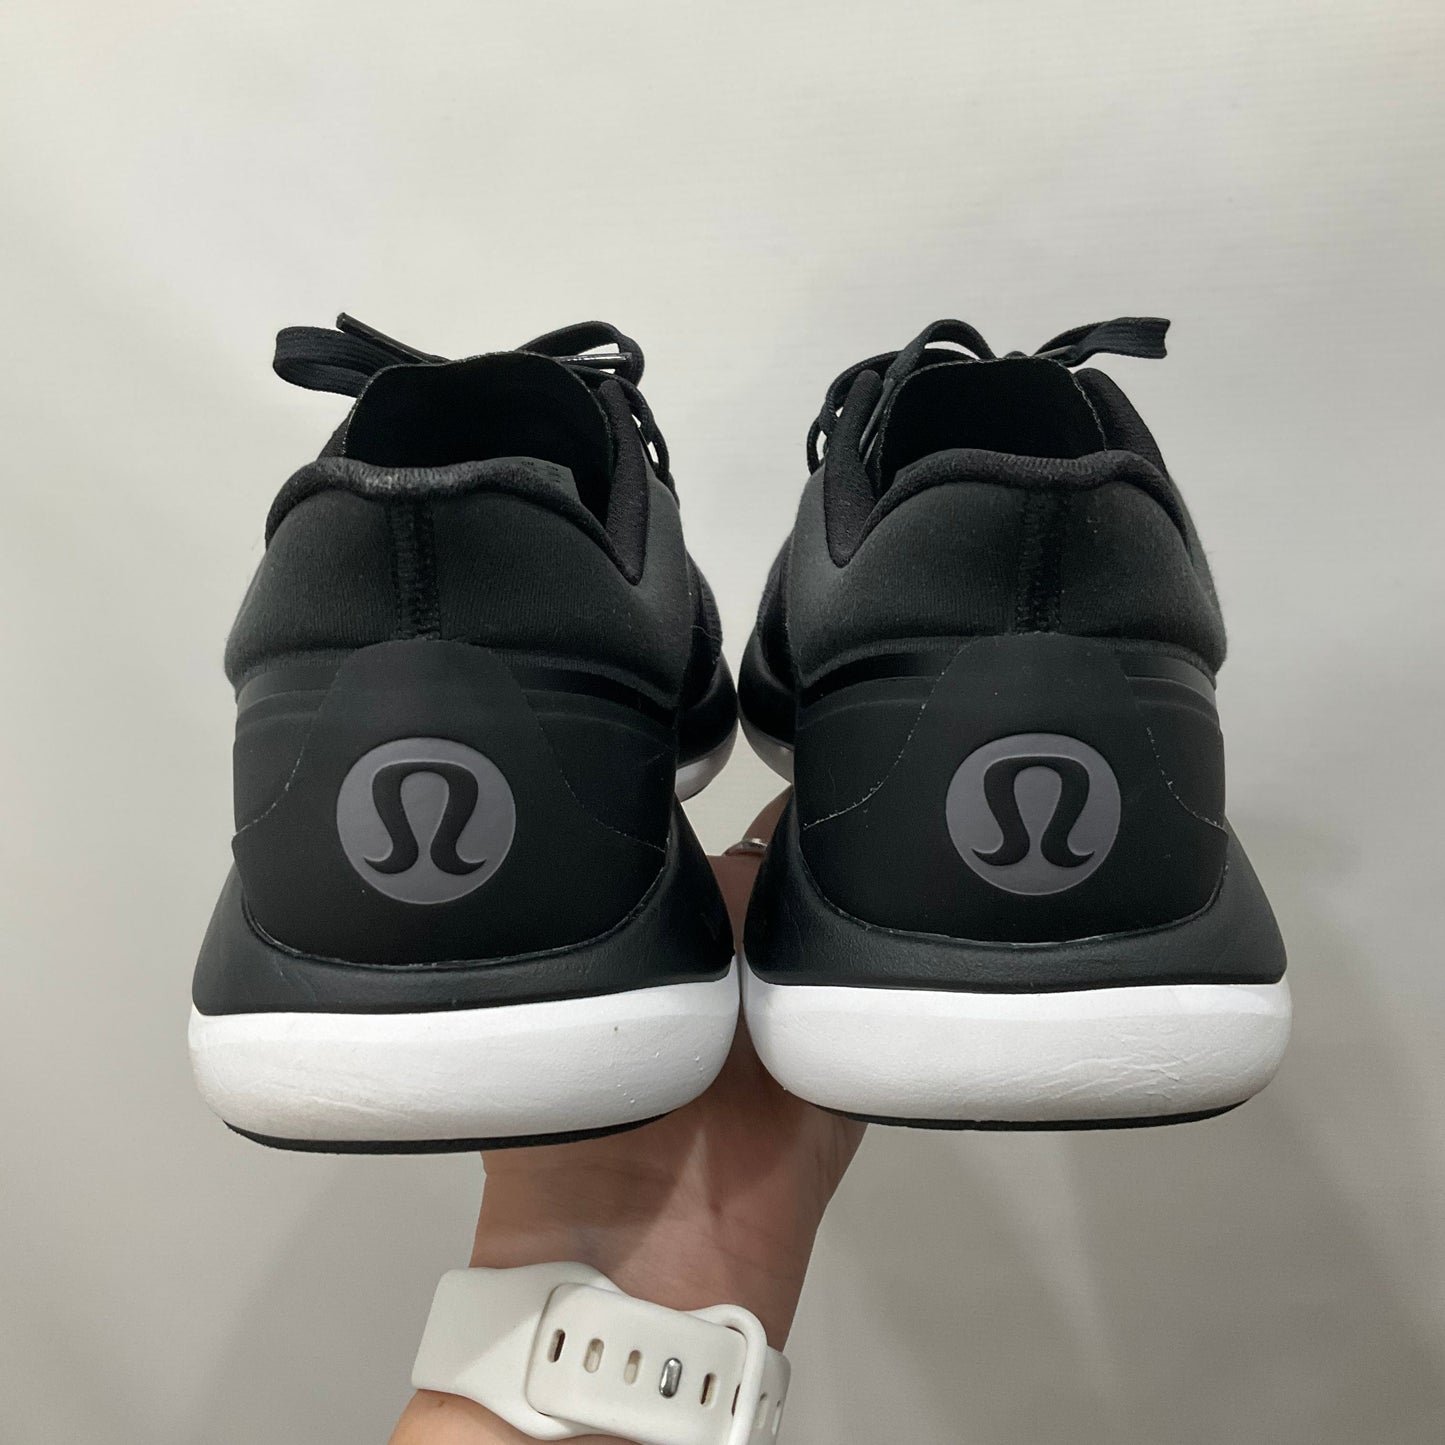 Black Shoes Athletic Lululemon, Size 9